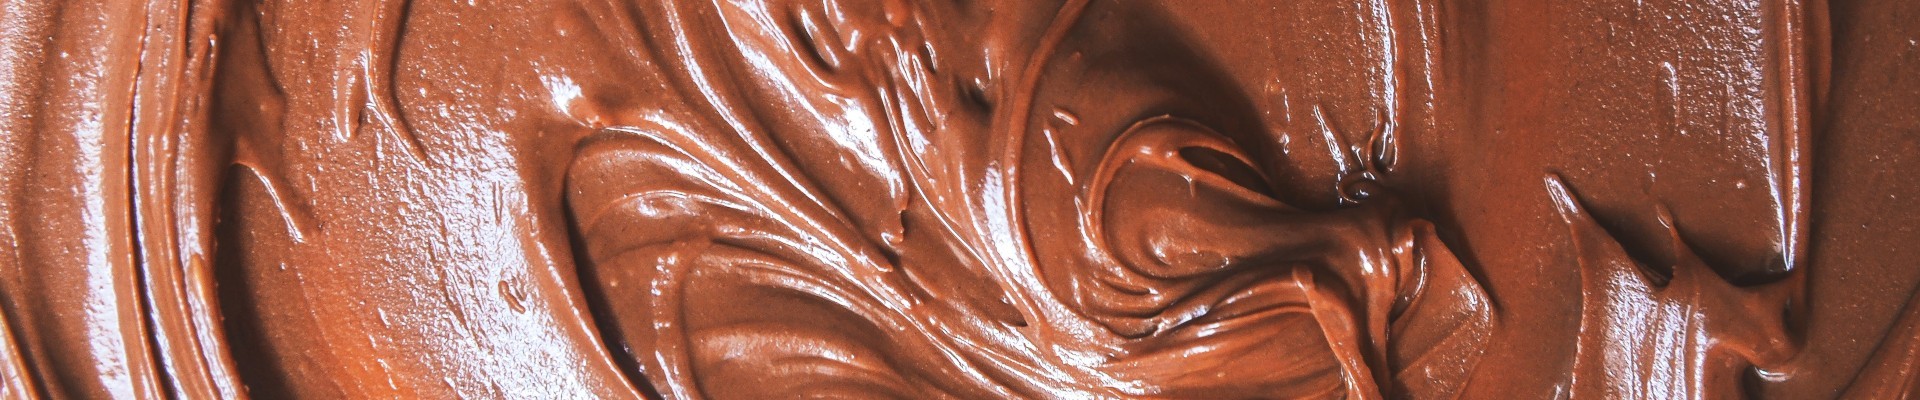 Du chocolat pour se remonter le moral et partager de délicieux moments